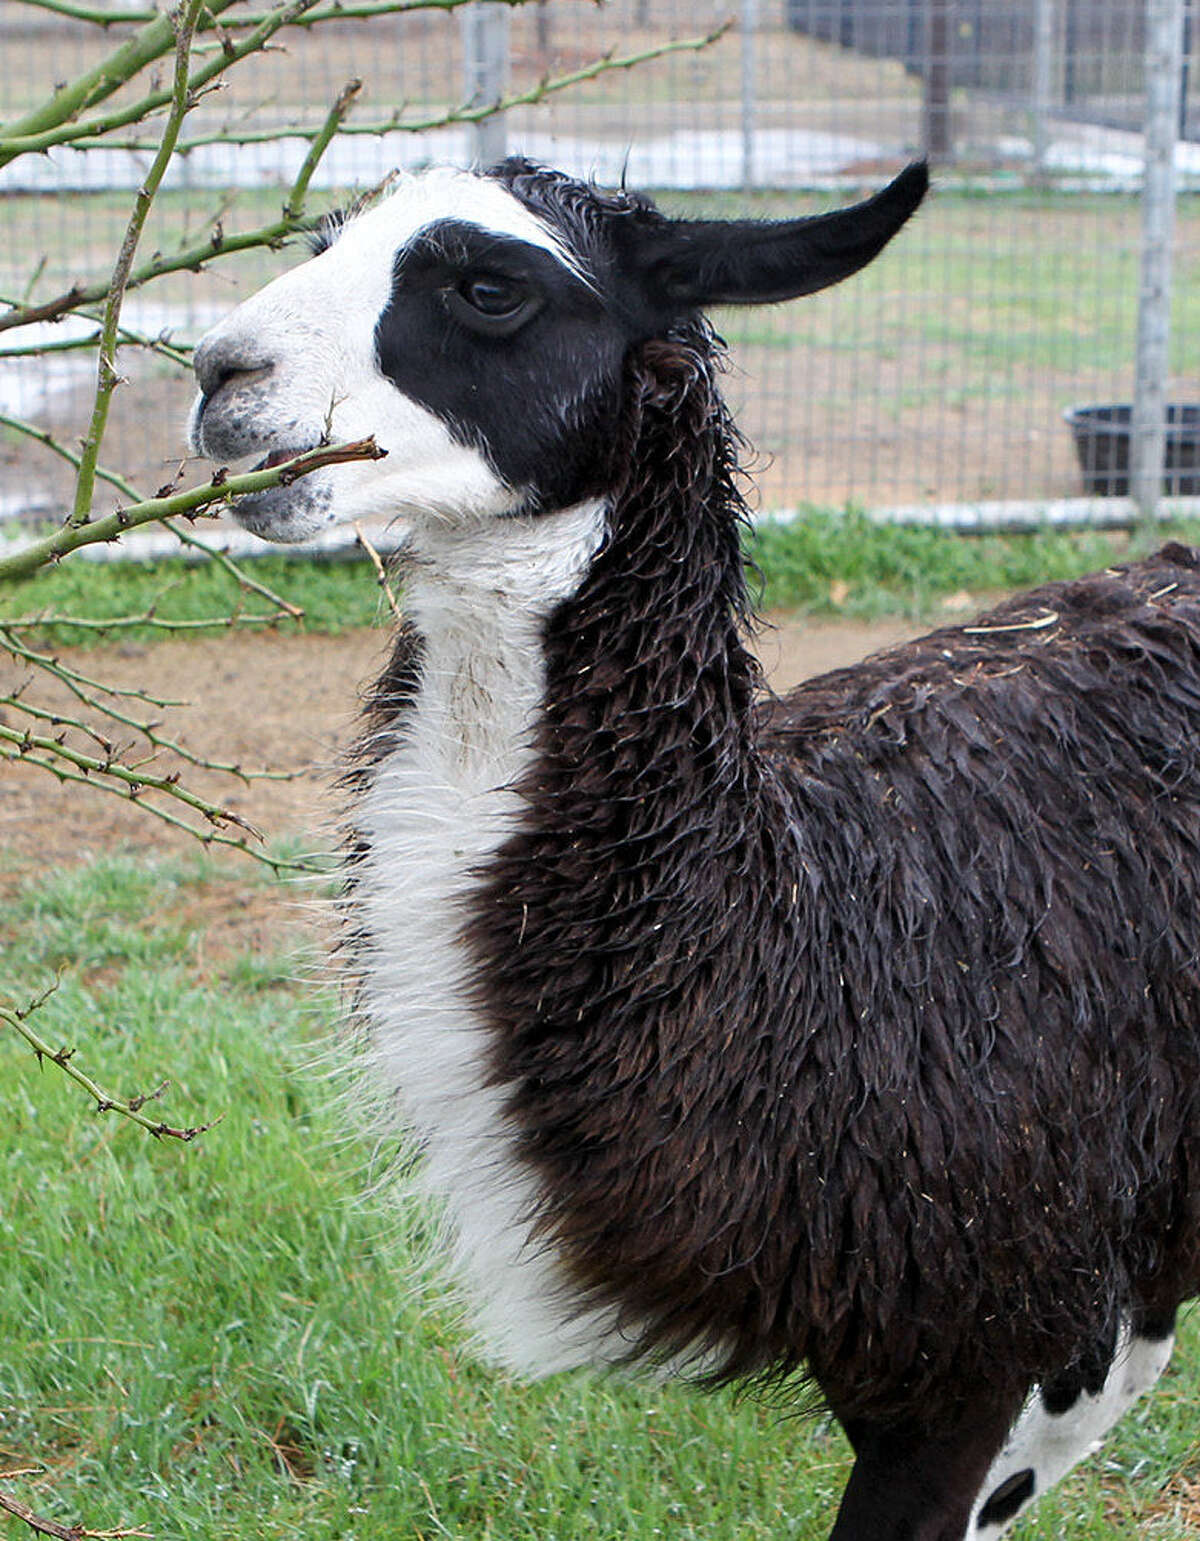 A llama nicknamed “Como Te” was holed up behind a business near Bandera Road and Loop 410.